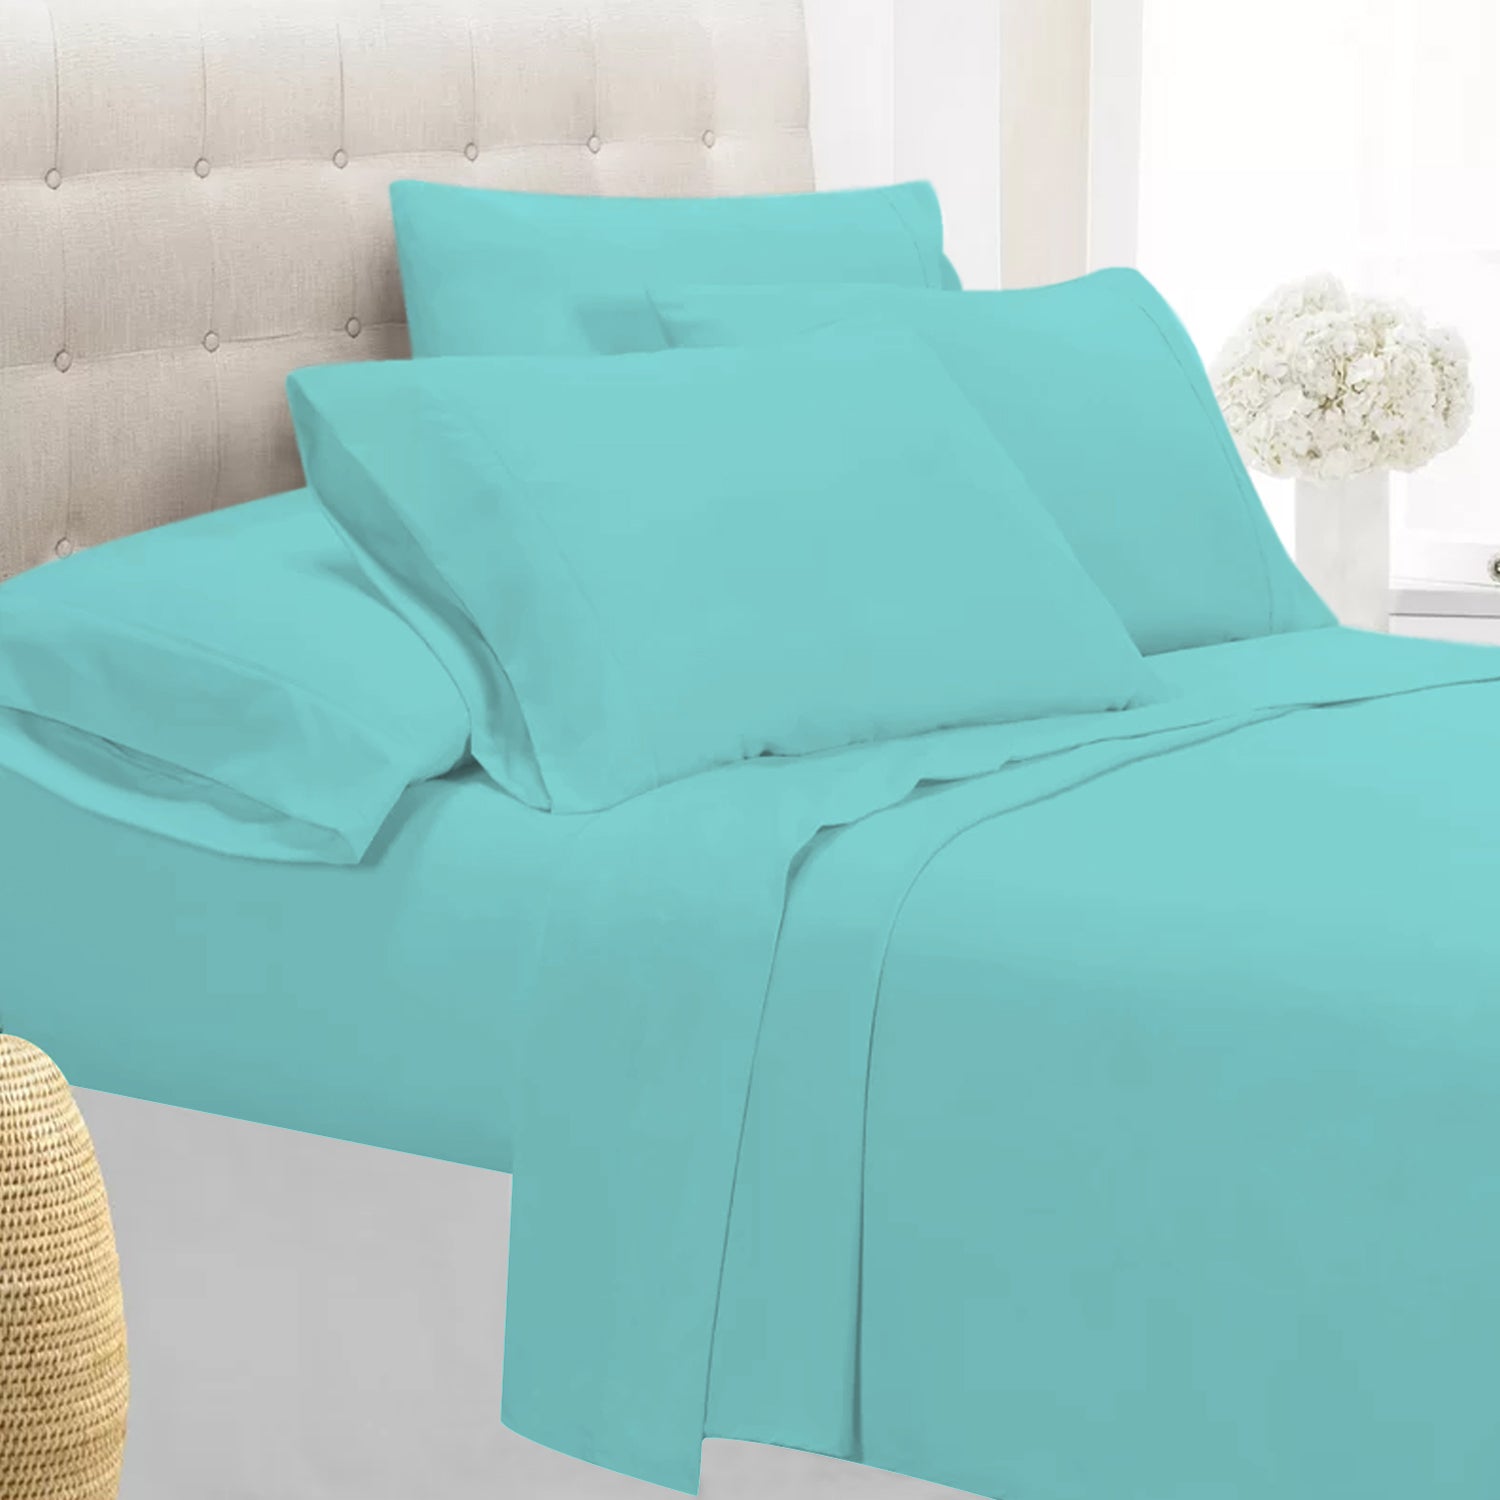 1800 Series 6 Piece Bedding Sheet & Pillowcases Sets w/ Deep